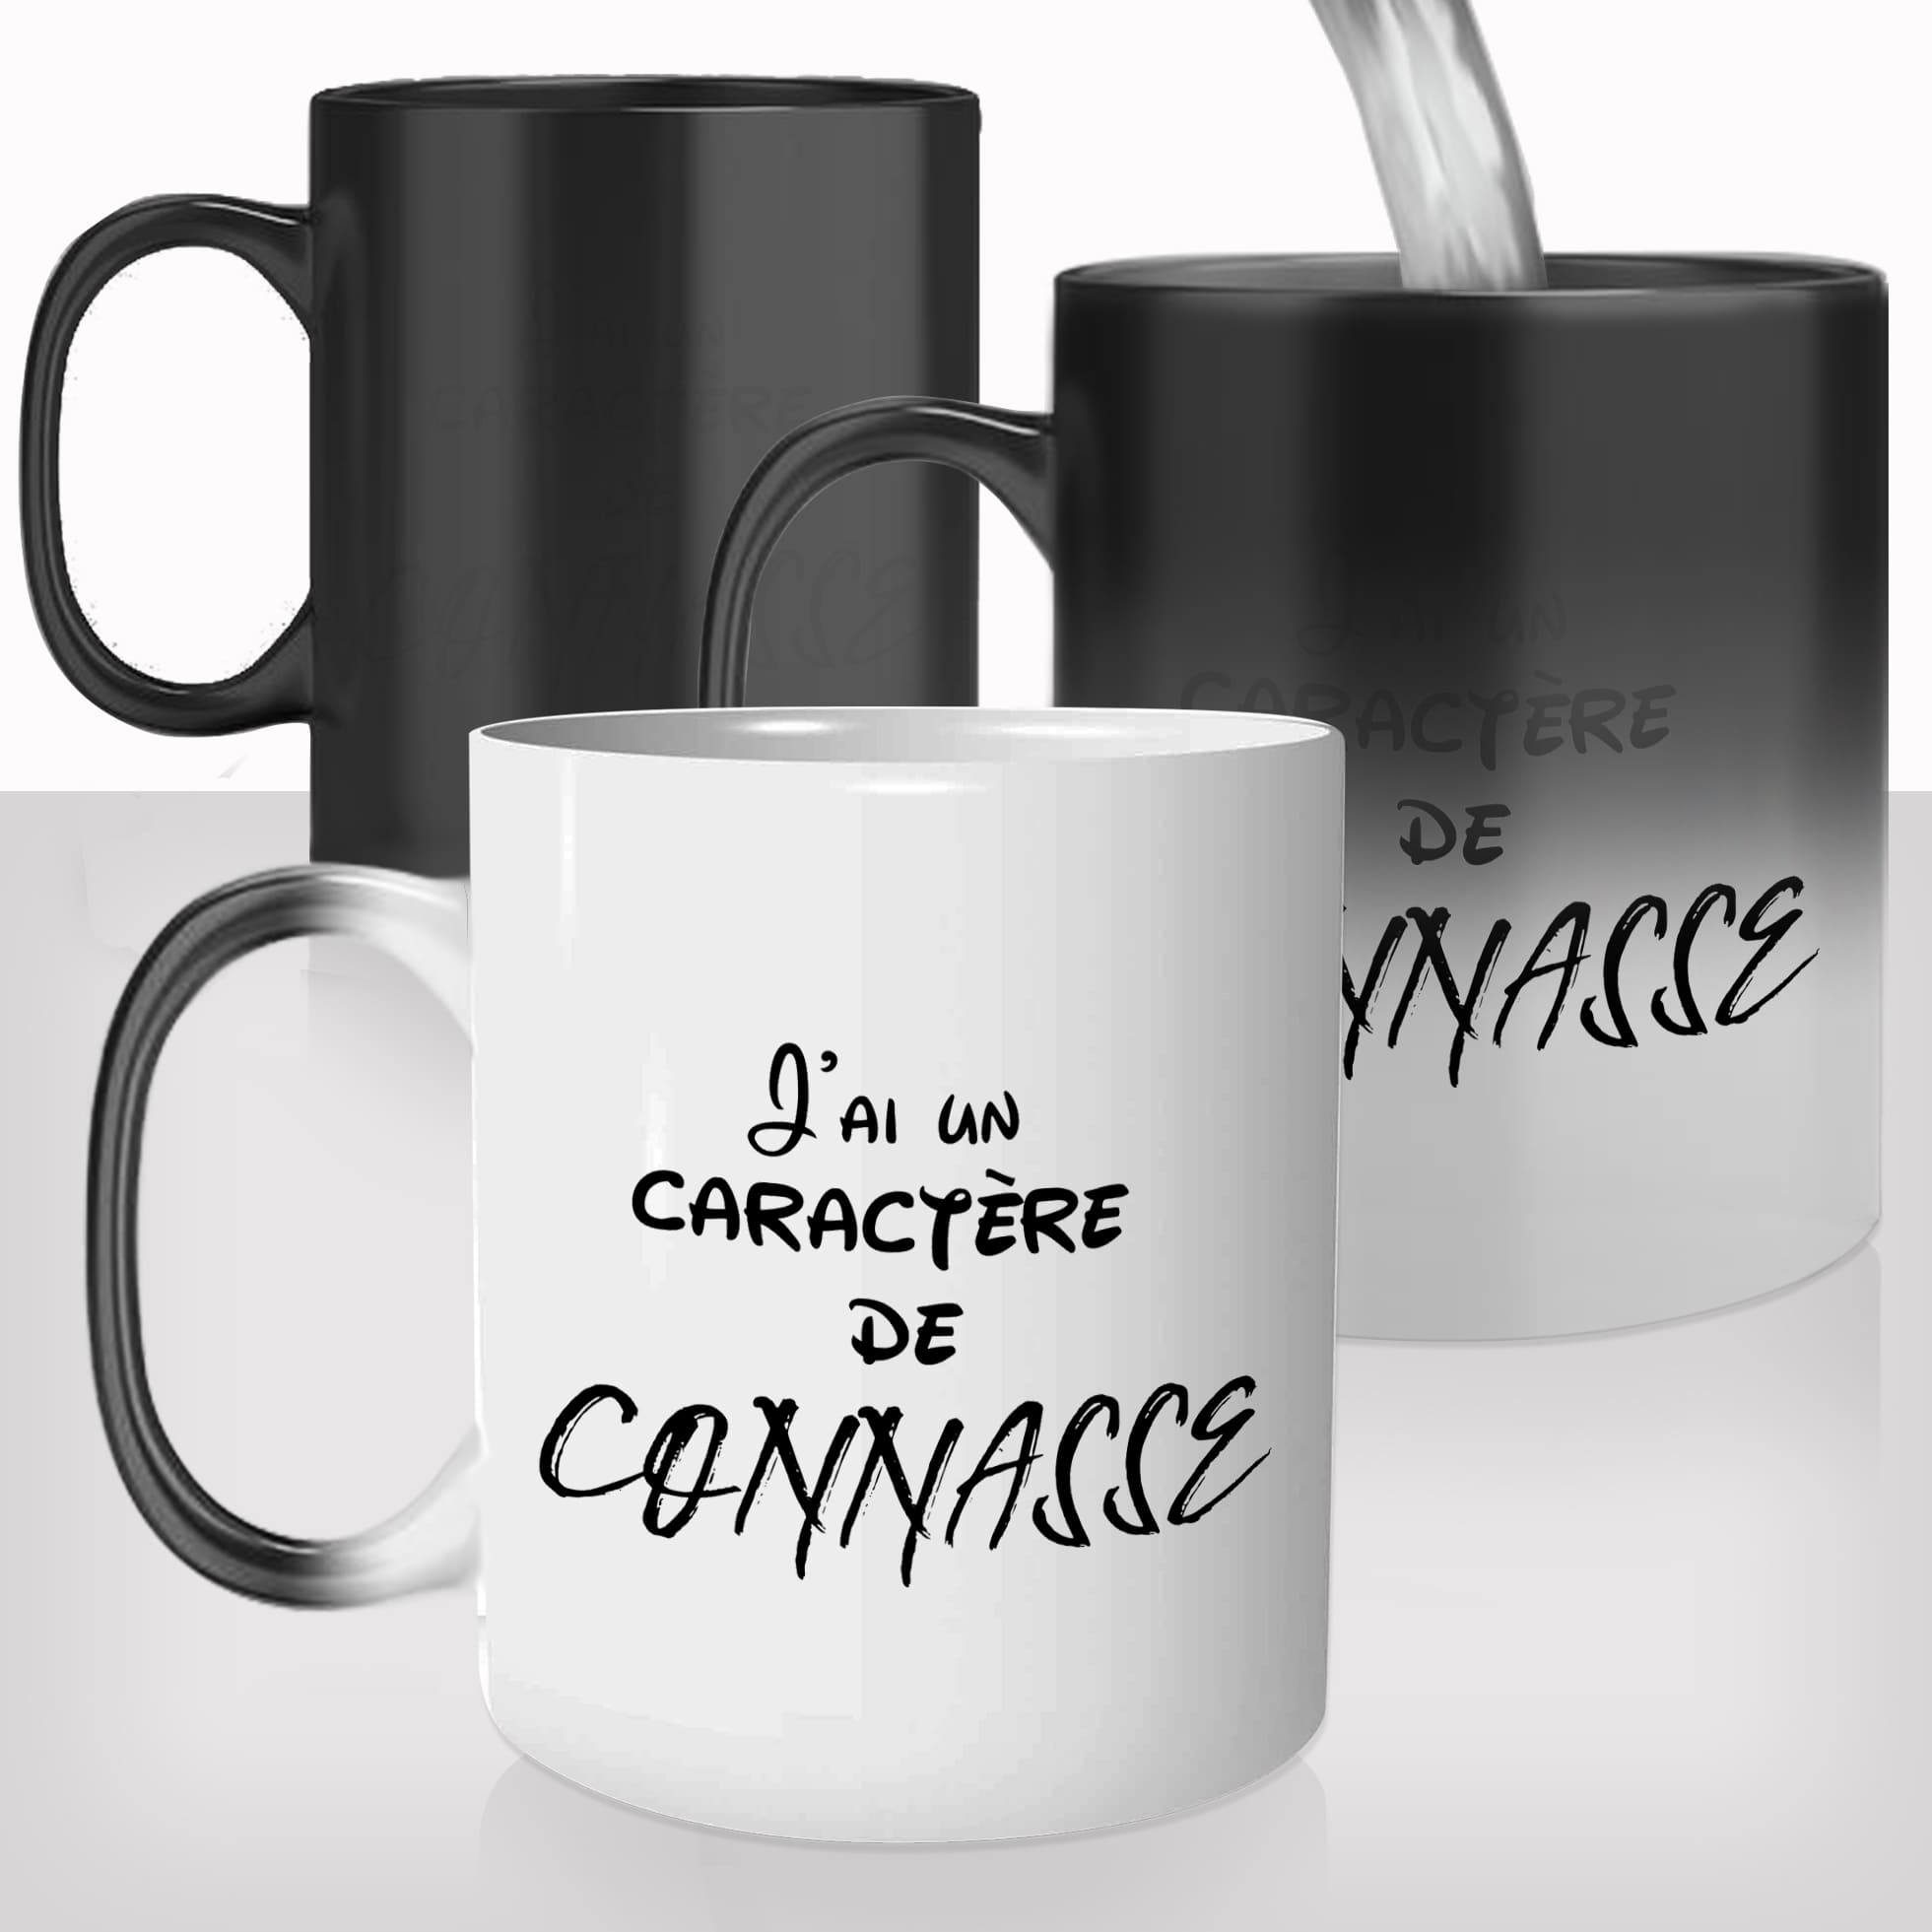 mug-magique-tasse-magic-thermo-reactif-caractere-de-connasse-femme-photo-personnalisable-drole-offrir-cadeau-fun-original-copine